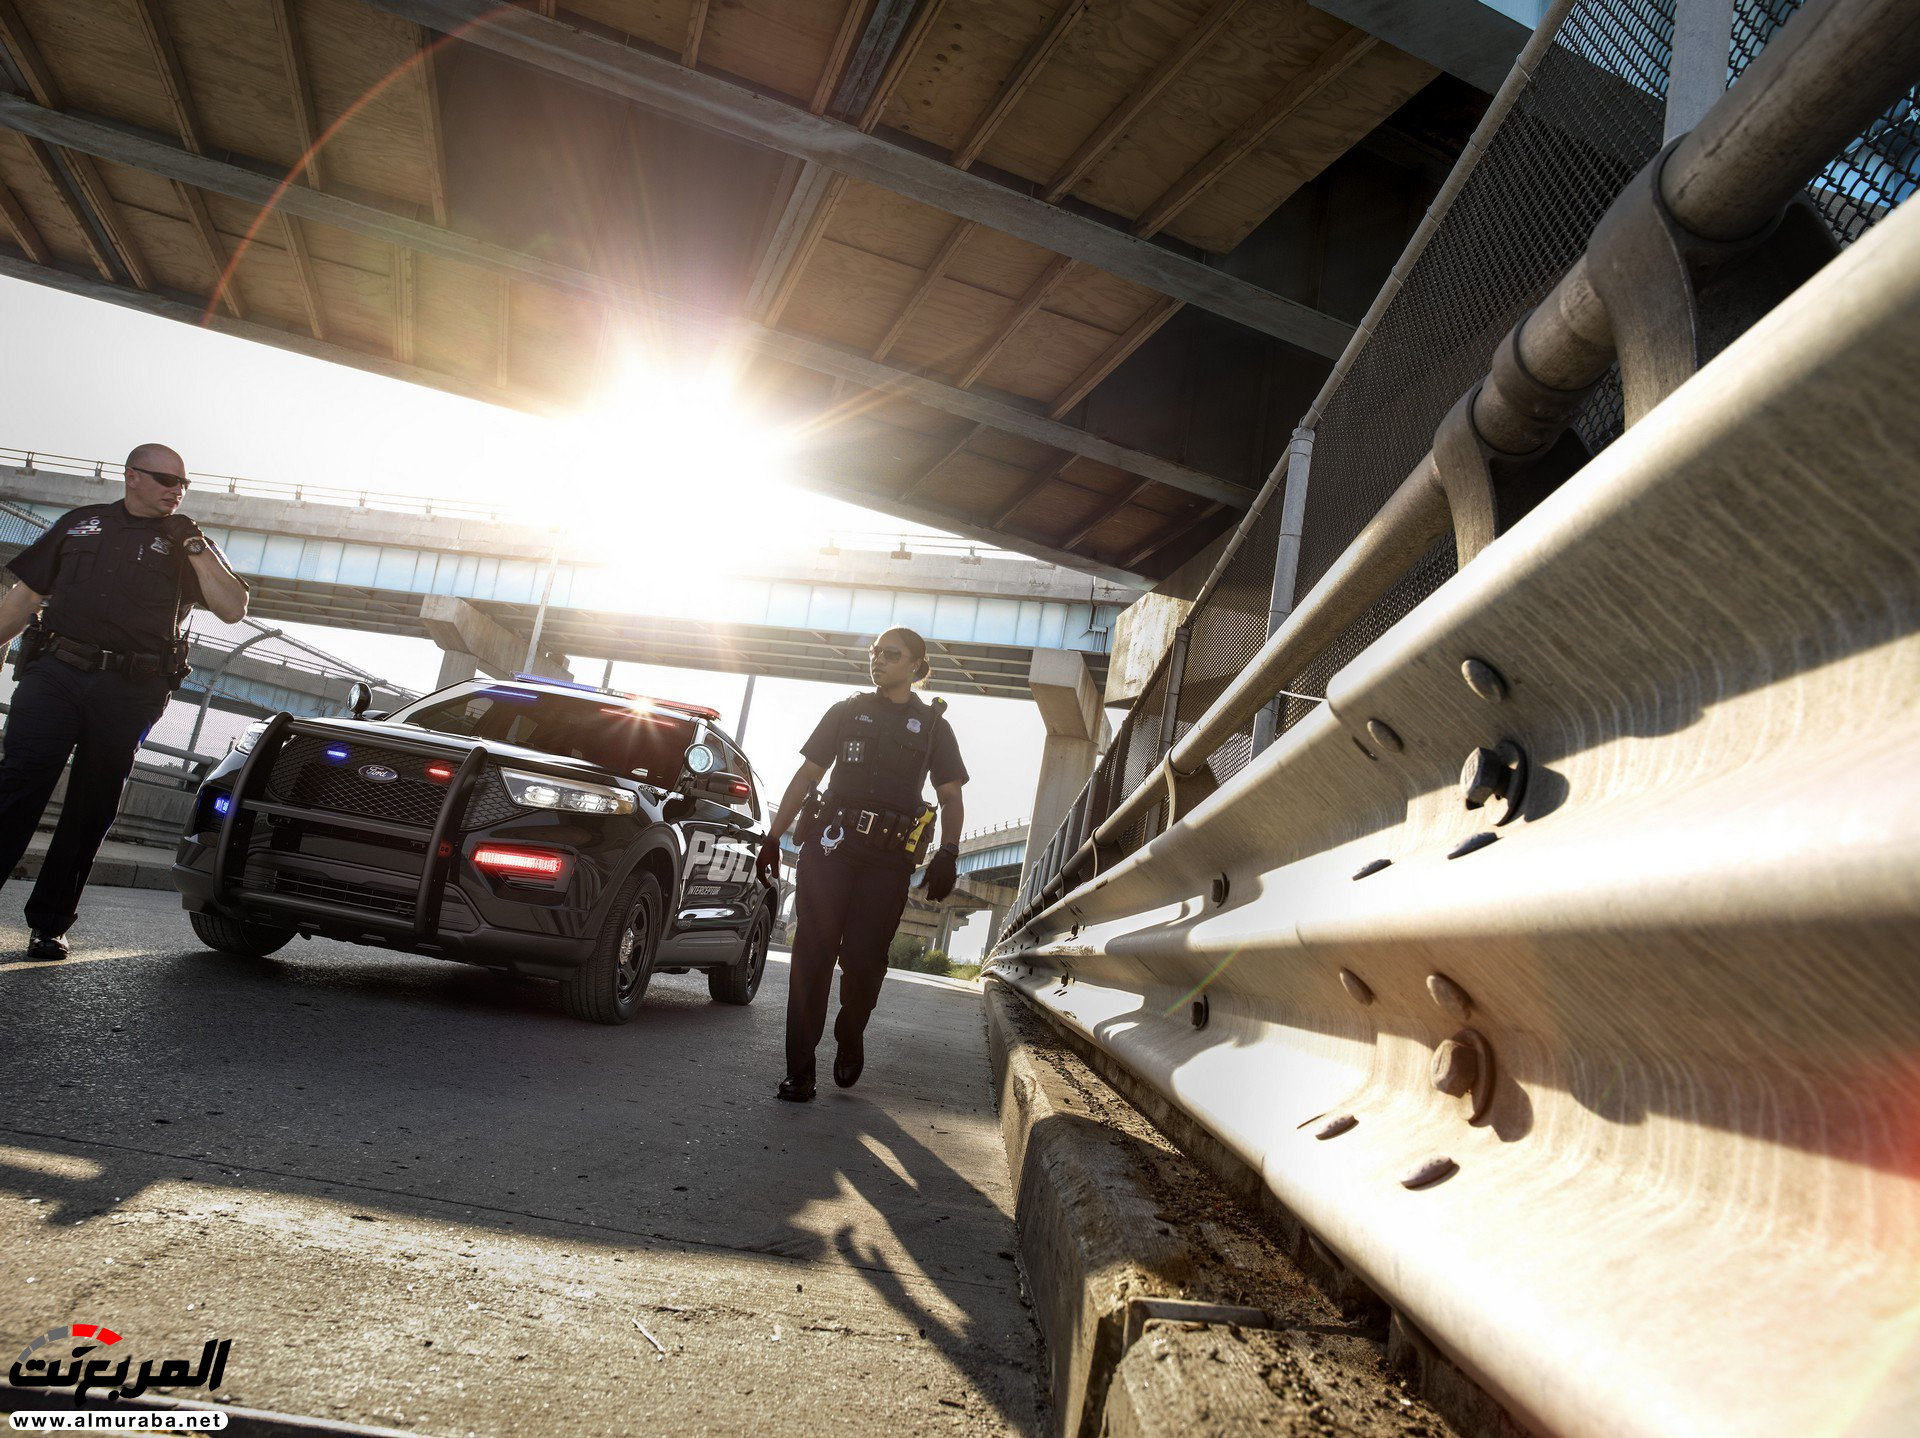 فورد اكسبلورر 2020 الجديدة كلياً تظهر رسمياً "نسخة الشرطة" 9